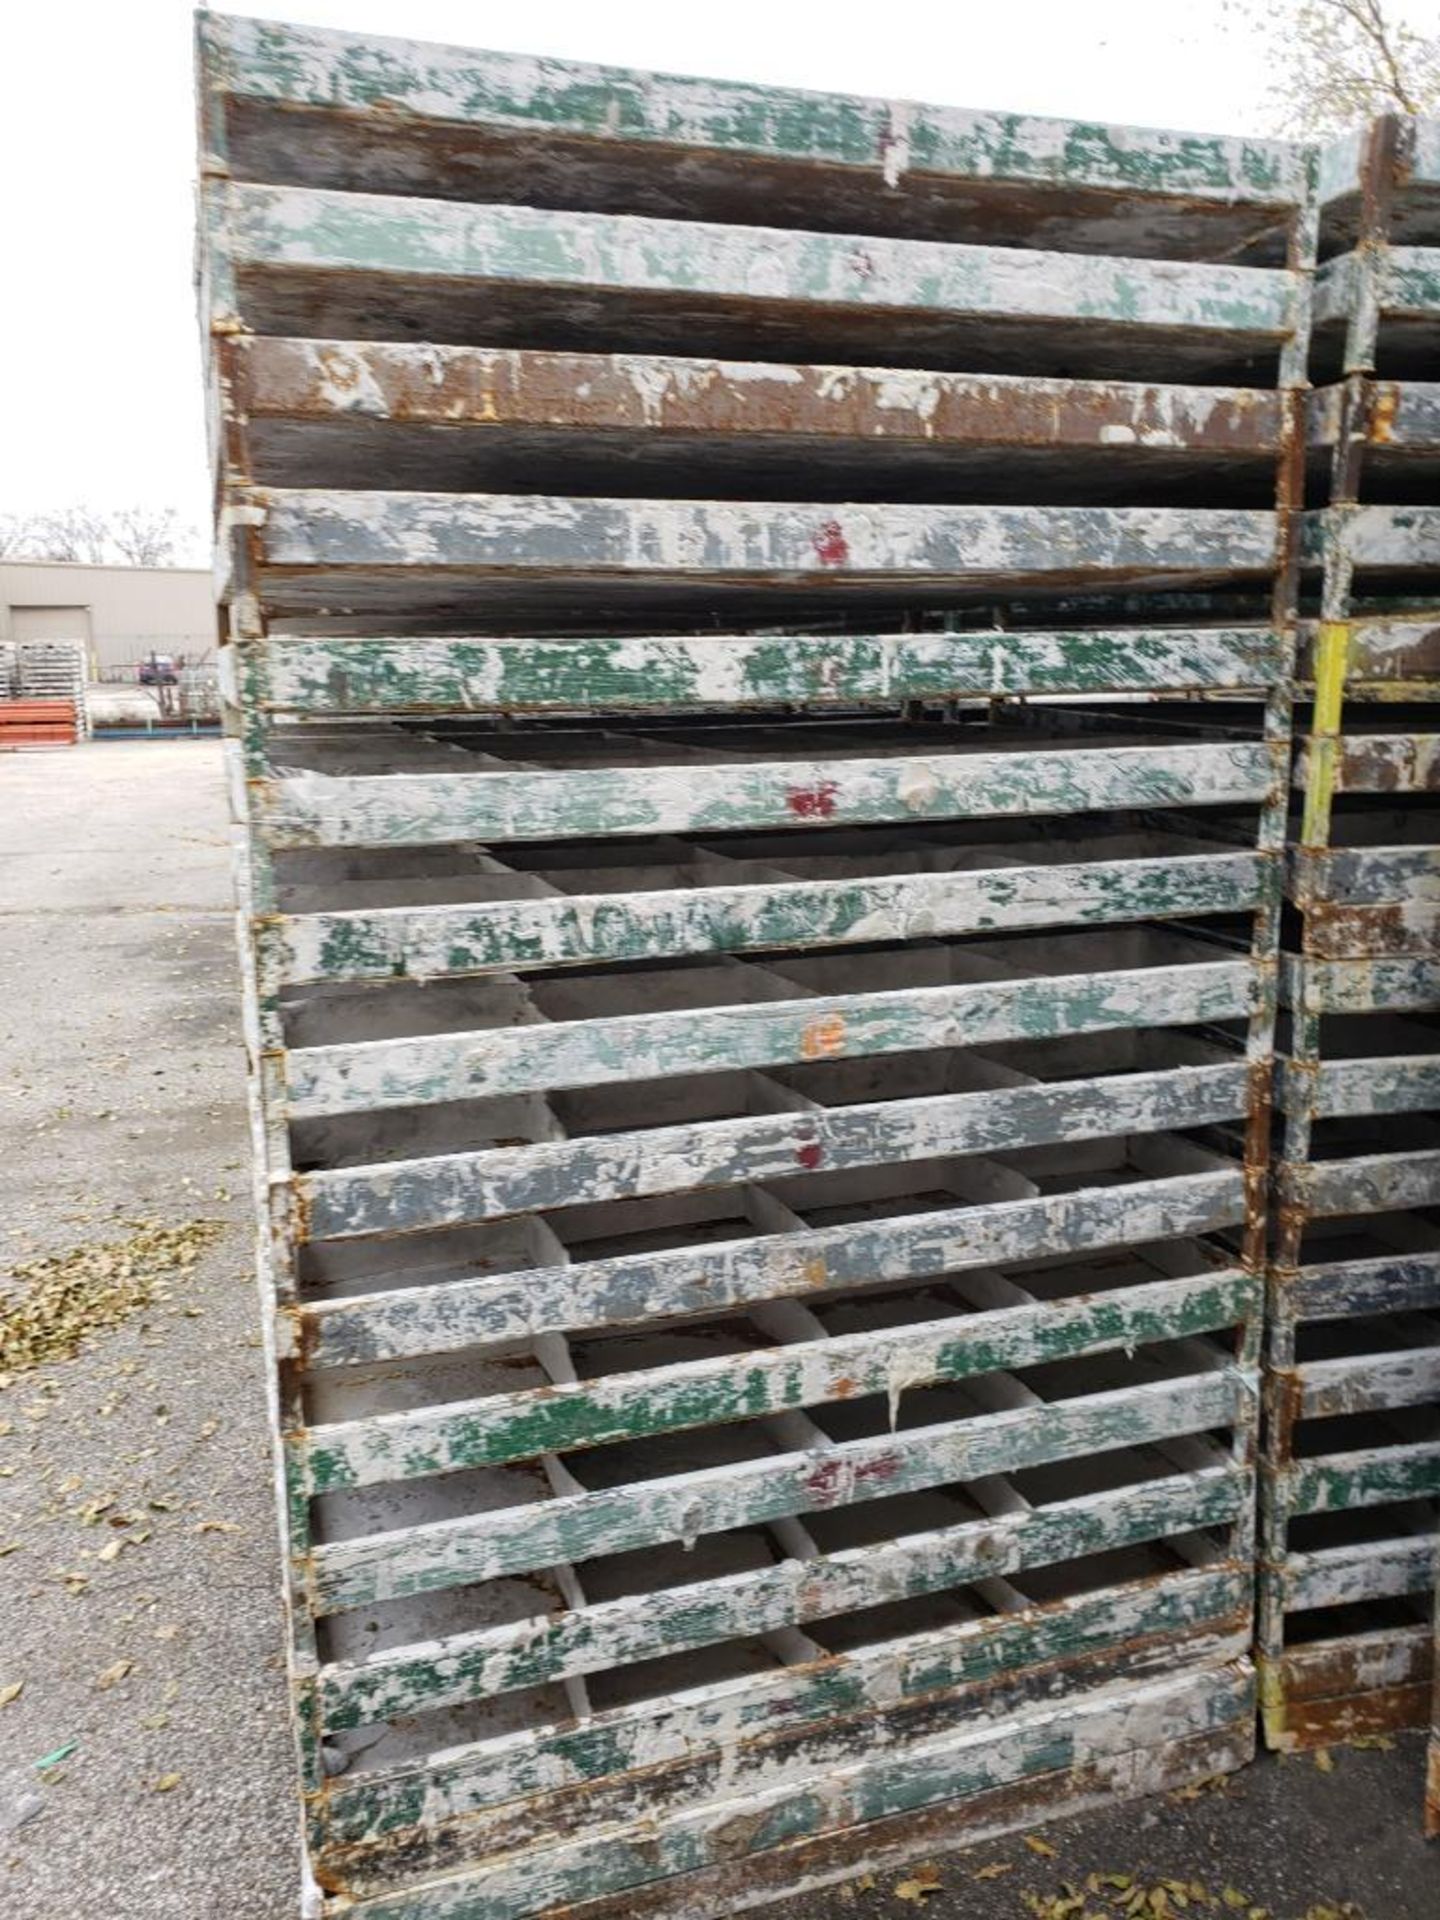 Qty 30 - Steel catch pan pallets. Heavy duty. 54in x 44in x 7in. - Image 3 of 5